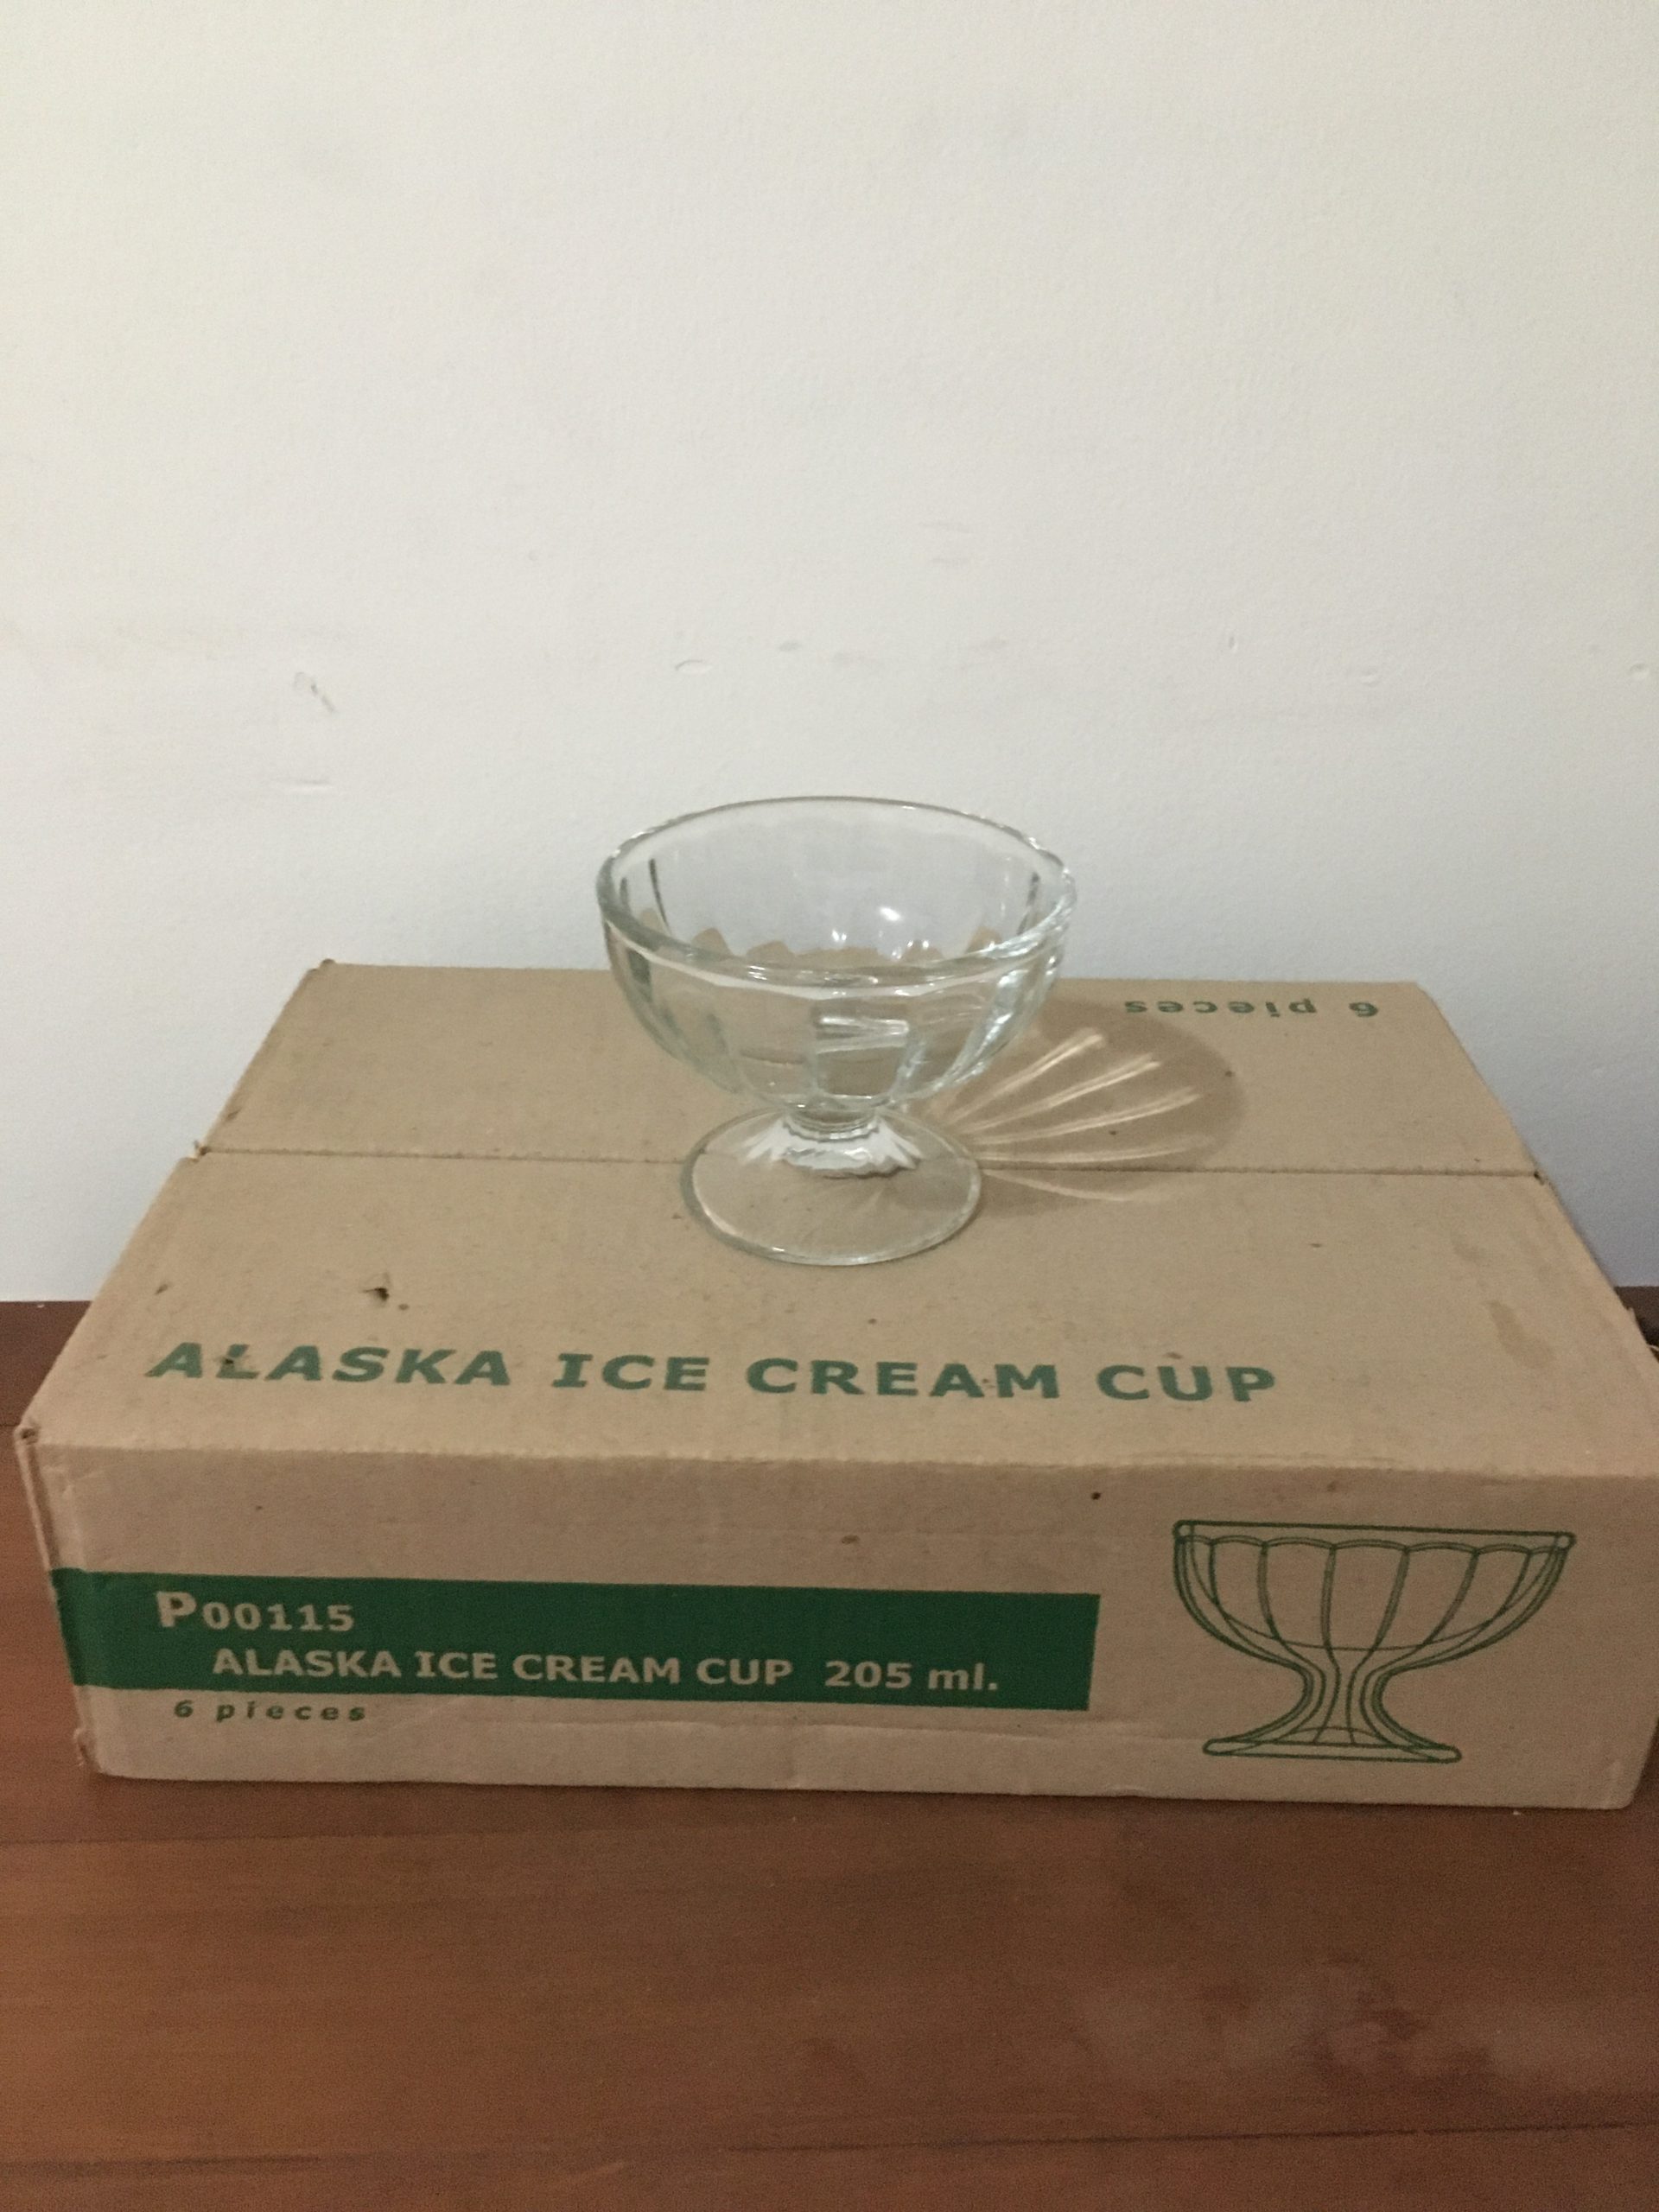 Icec cream or dessert cups